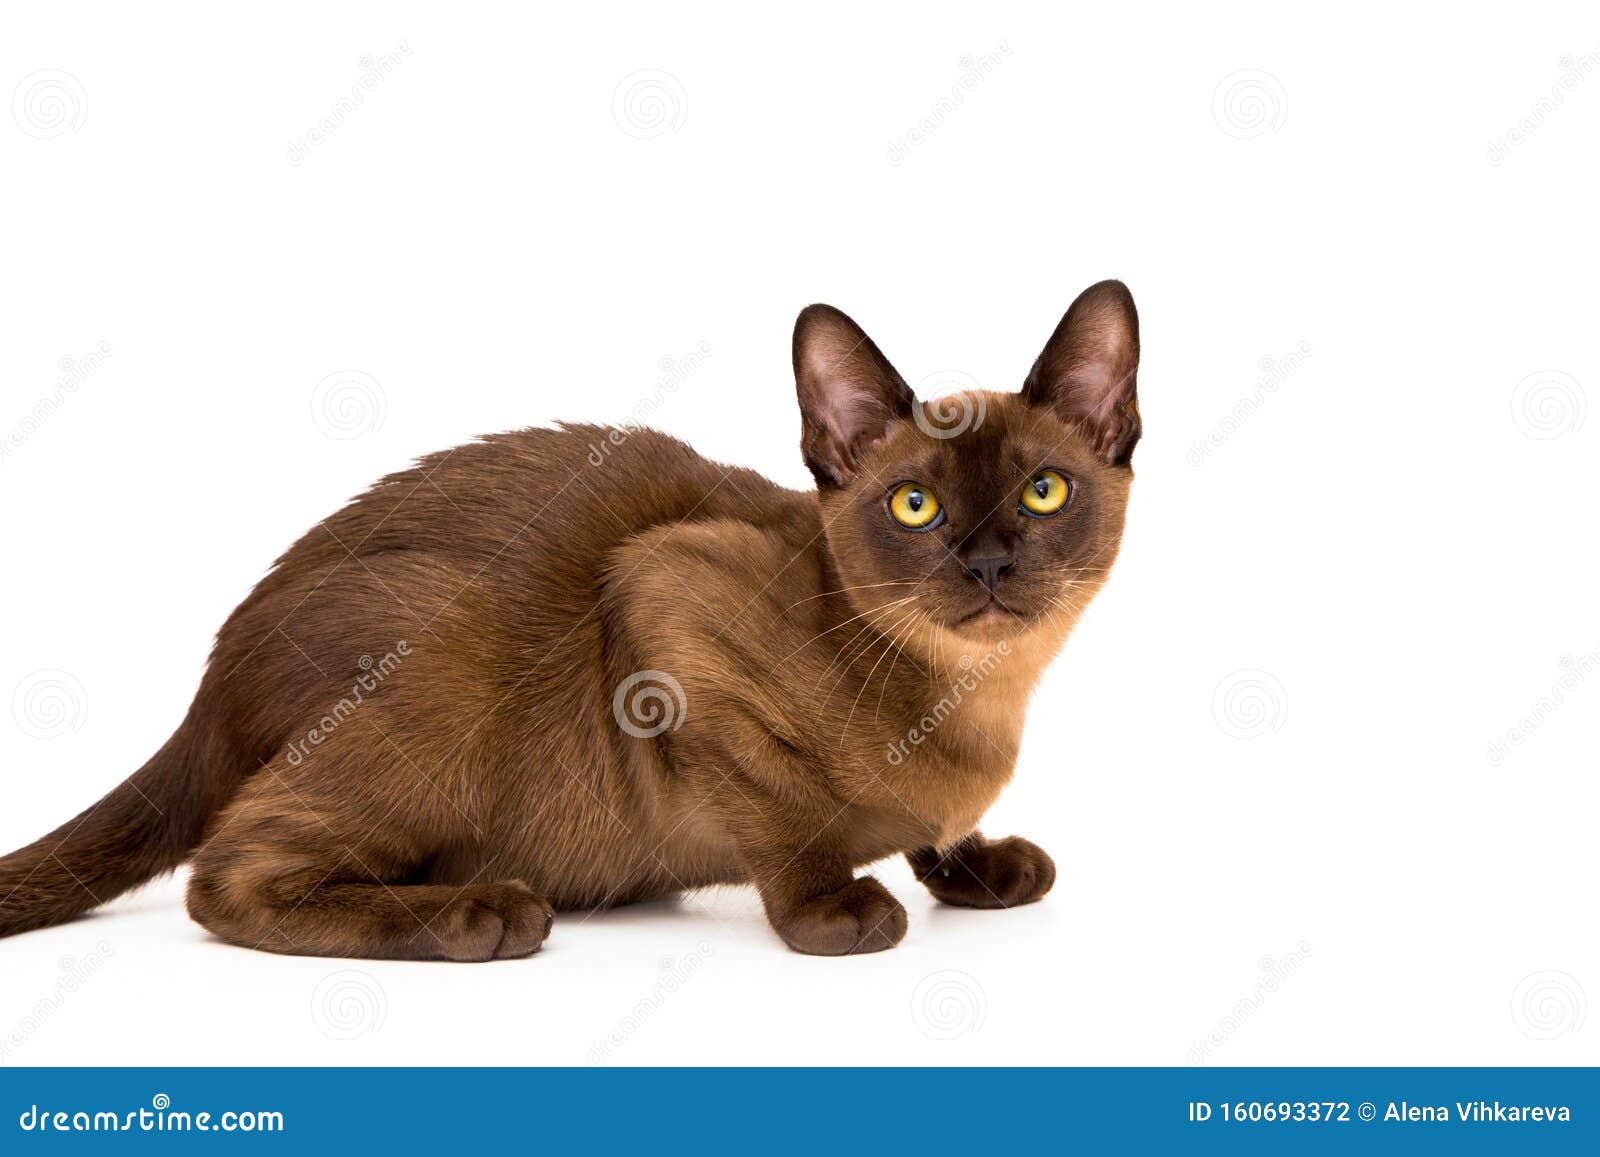 Бирманская Кошка Фото Шоколадного